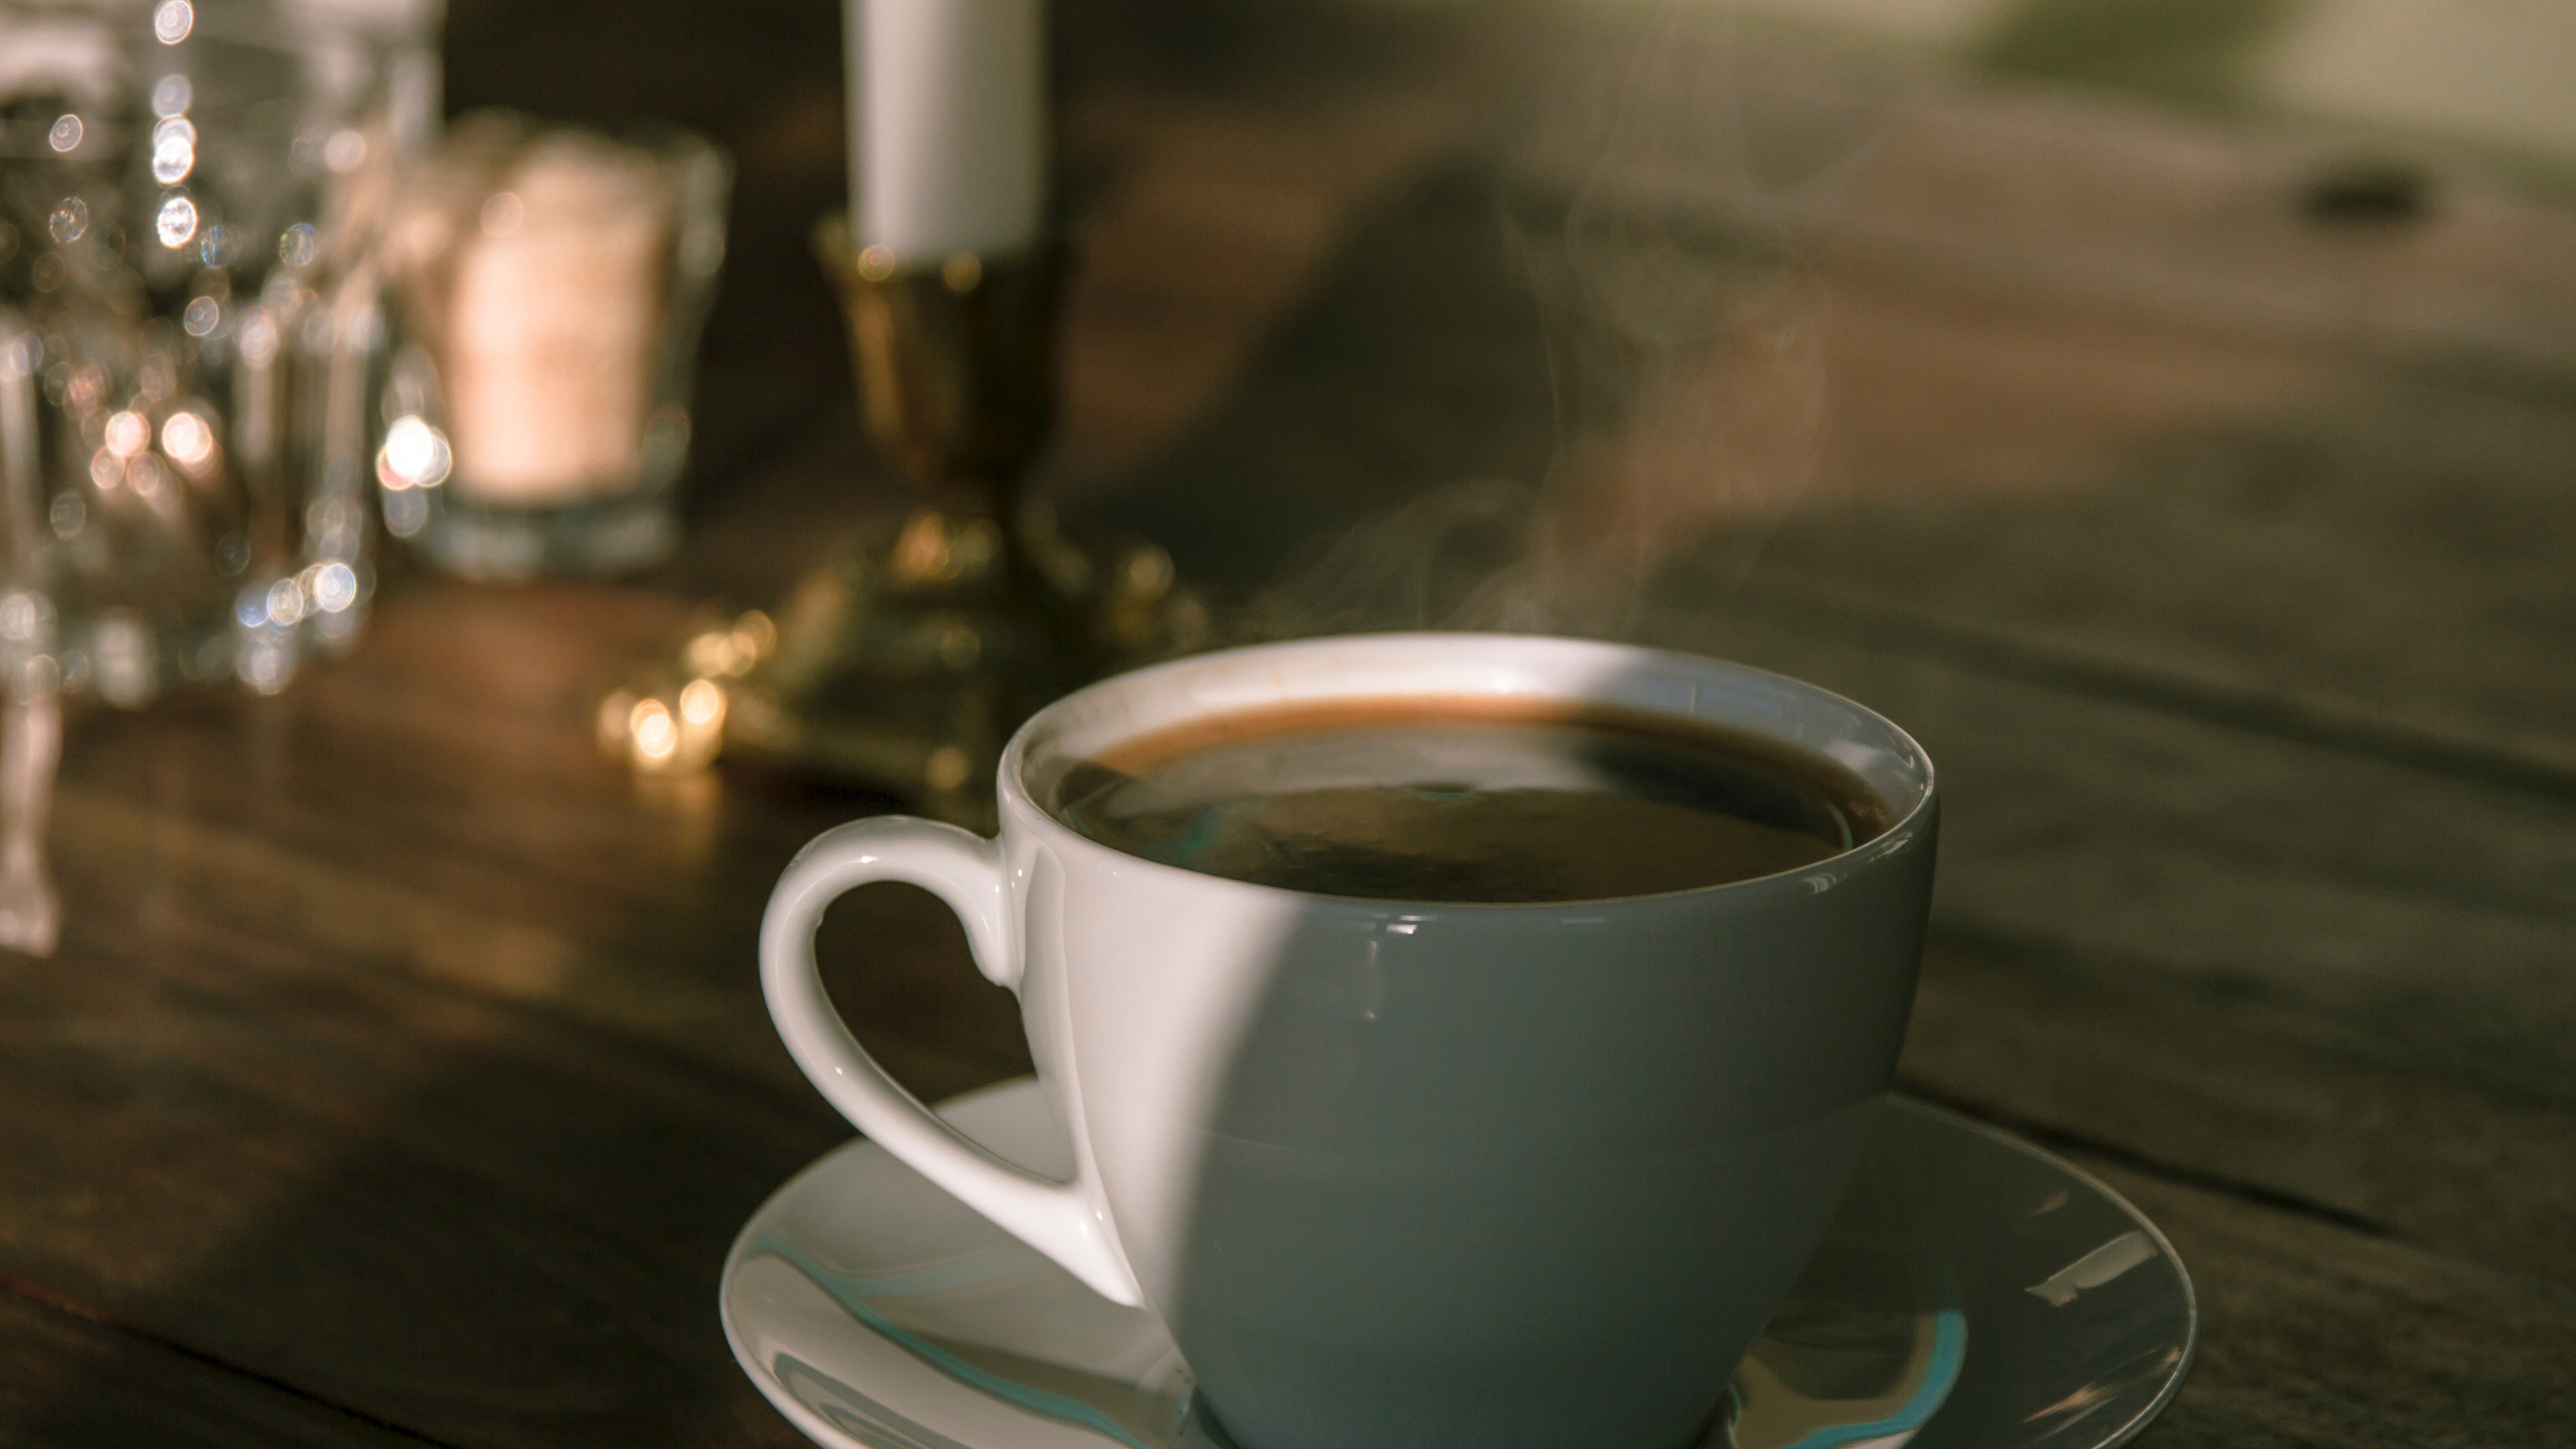 卡布奇诺咖啡, 咖啡杯, 器皿, 古巴咖啡, 蒲公英咖啡 壁纸 3840x2160 允许